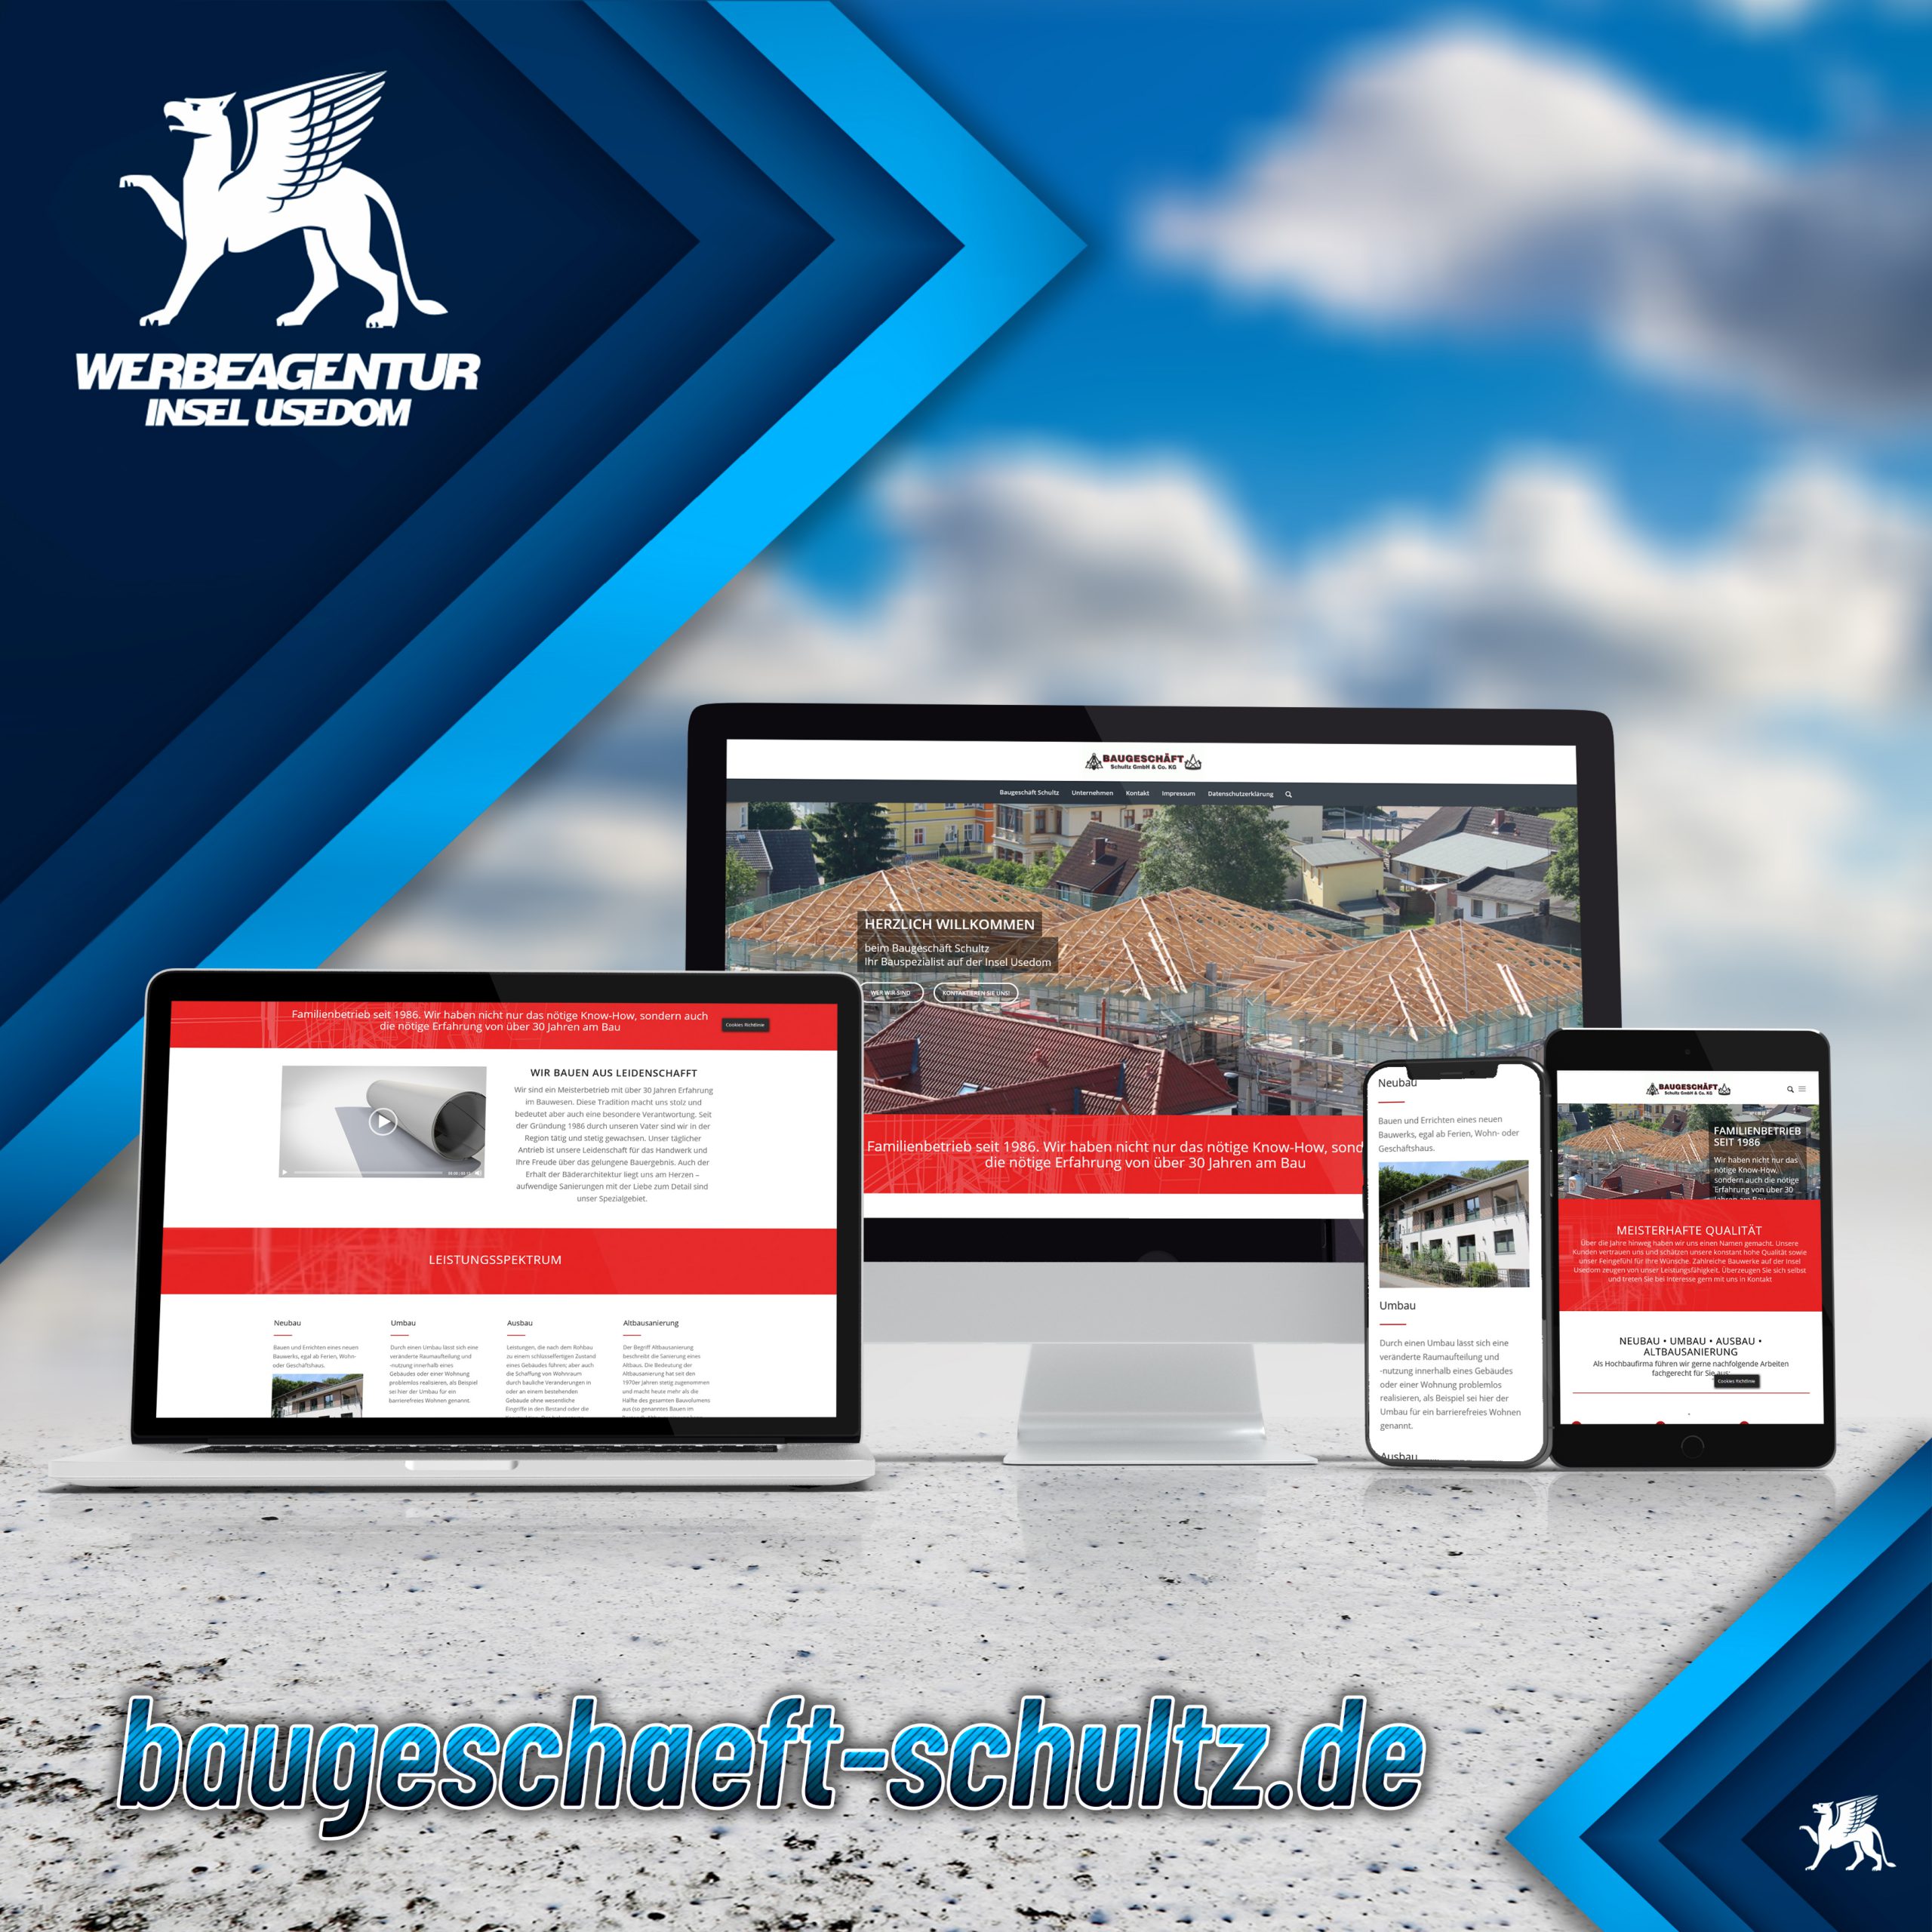 Baugeschäft Schultz GmbH & Co. KG